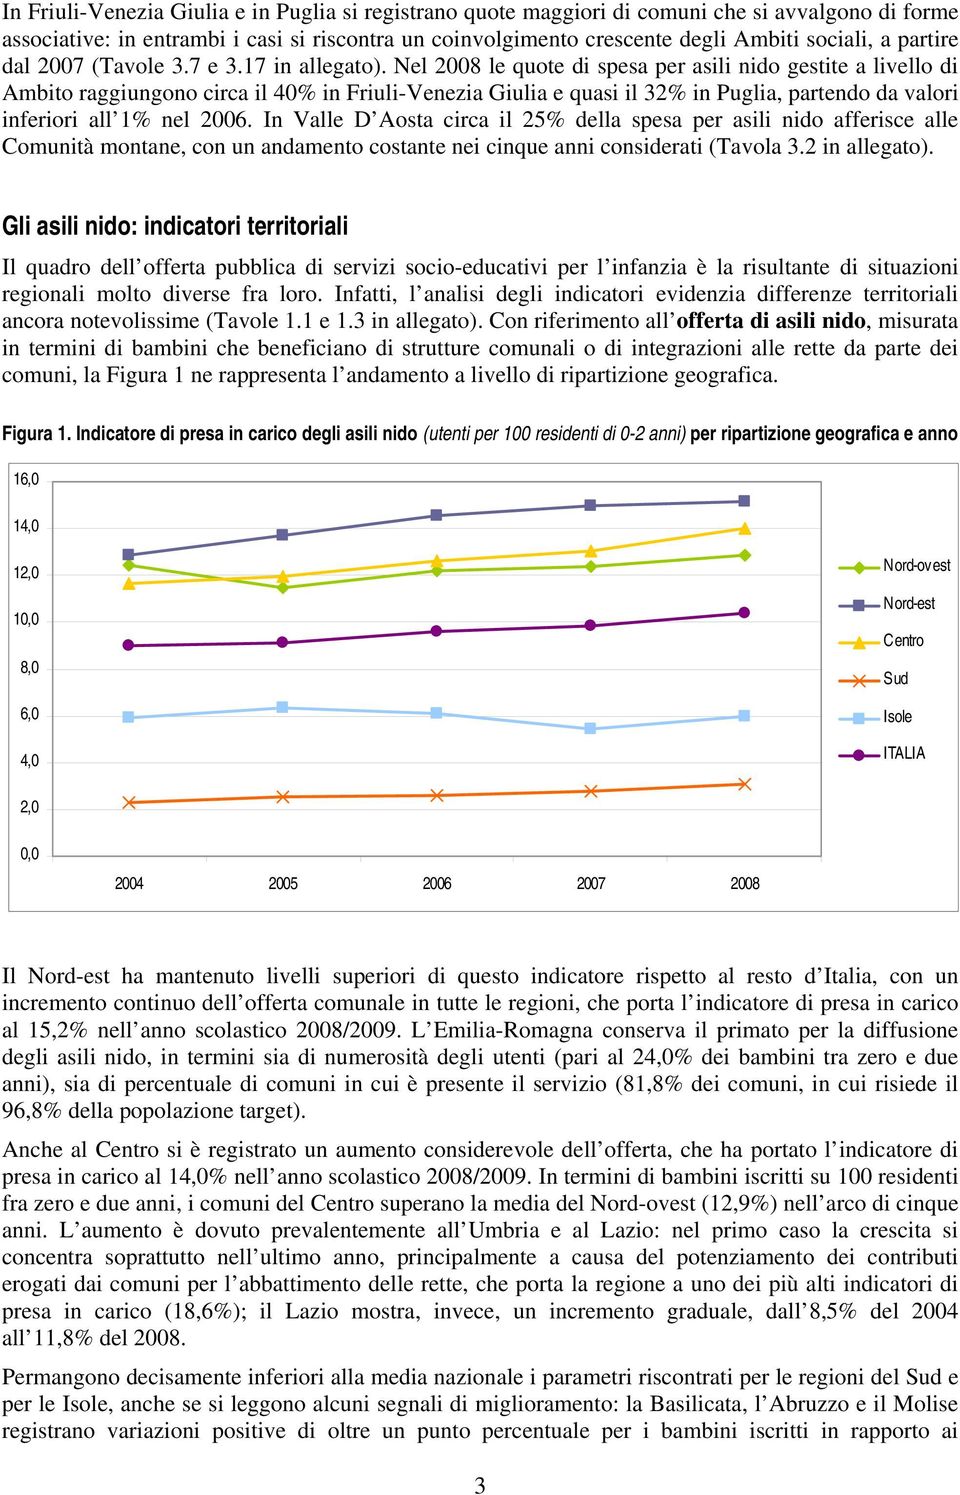 Nel 2008 le quote di spesa per asili nido gestite a livello di Ambito raggiungono circa il 40% in Friuli-Venezia Giulia e quasi il 32% in Puglia, partendo da valori inferiori all 1% nel 2006.